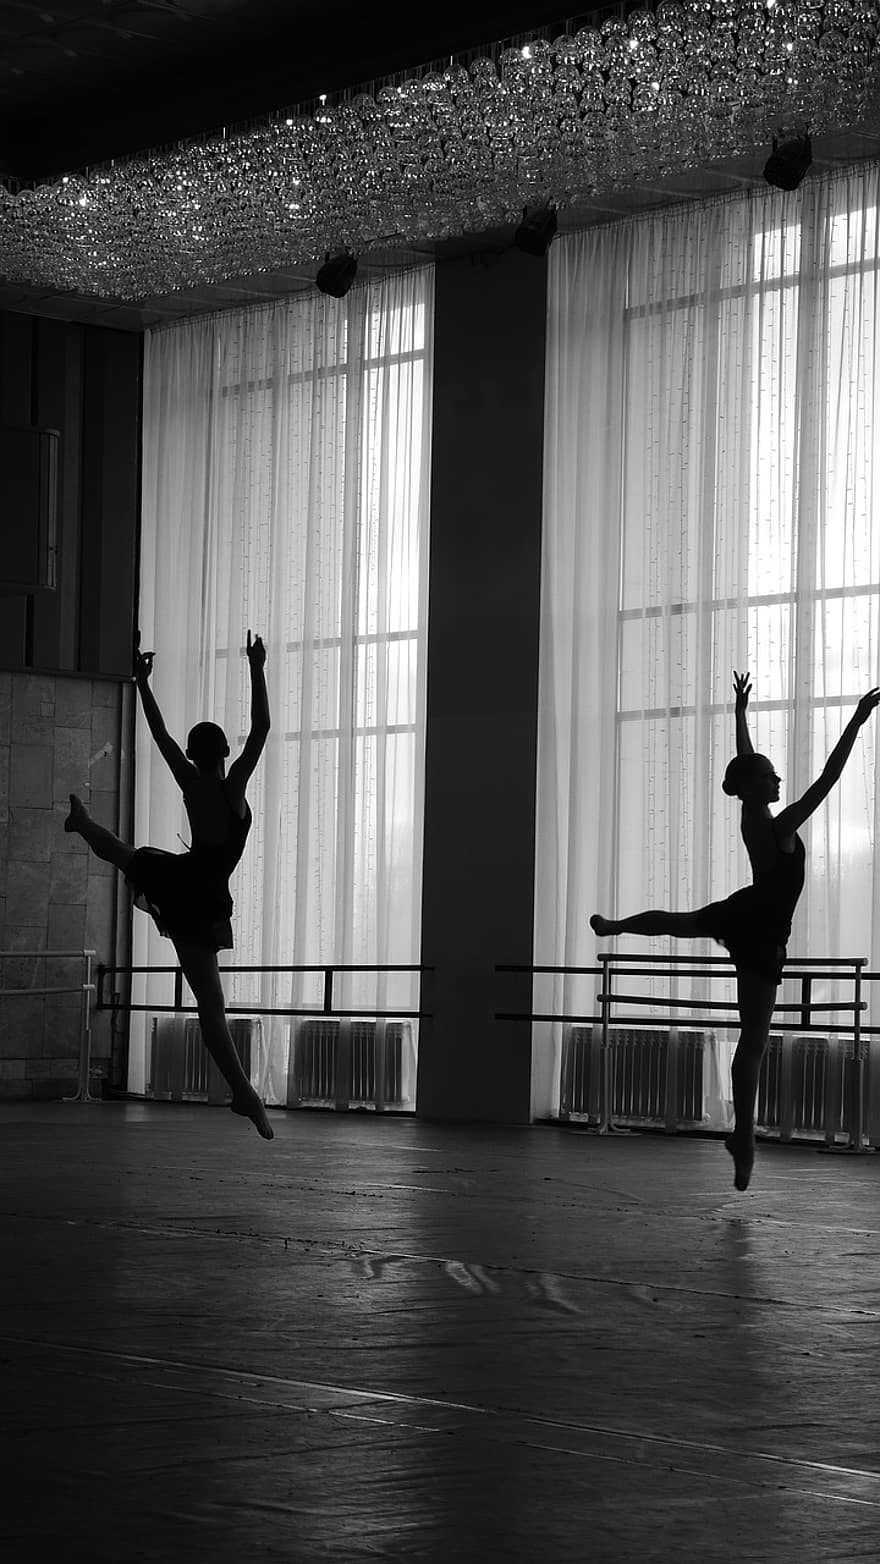 balets, balerīnas, dejas, dejotāji, baleta studija, jaunām sievietēm, baleta dejotāji, baletdejotājs, dejotājs, izpildītājs, veiktspēju